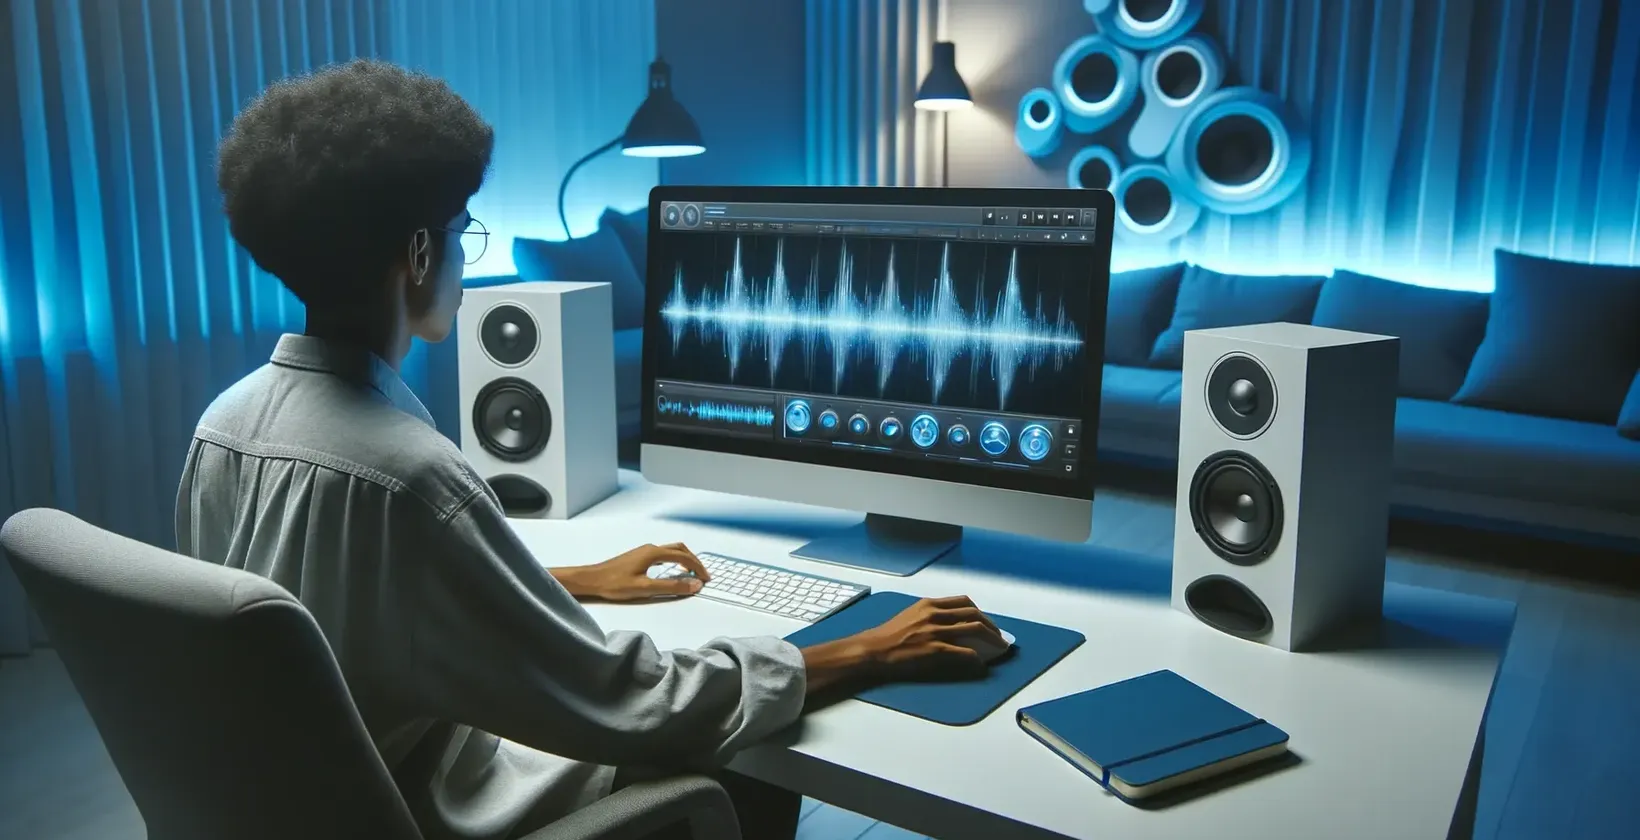 אדם עובד במחשב ומוסיף טקסט ל- shotcut video בסביבת אולפן מודרנית עם רמקולים